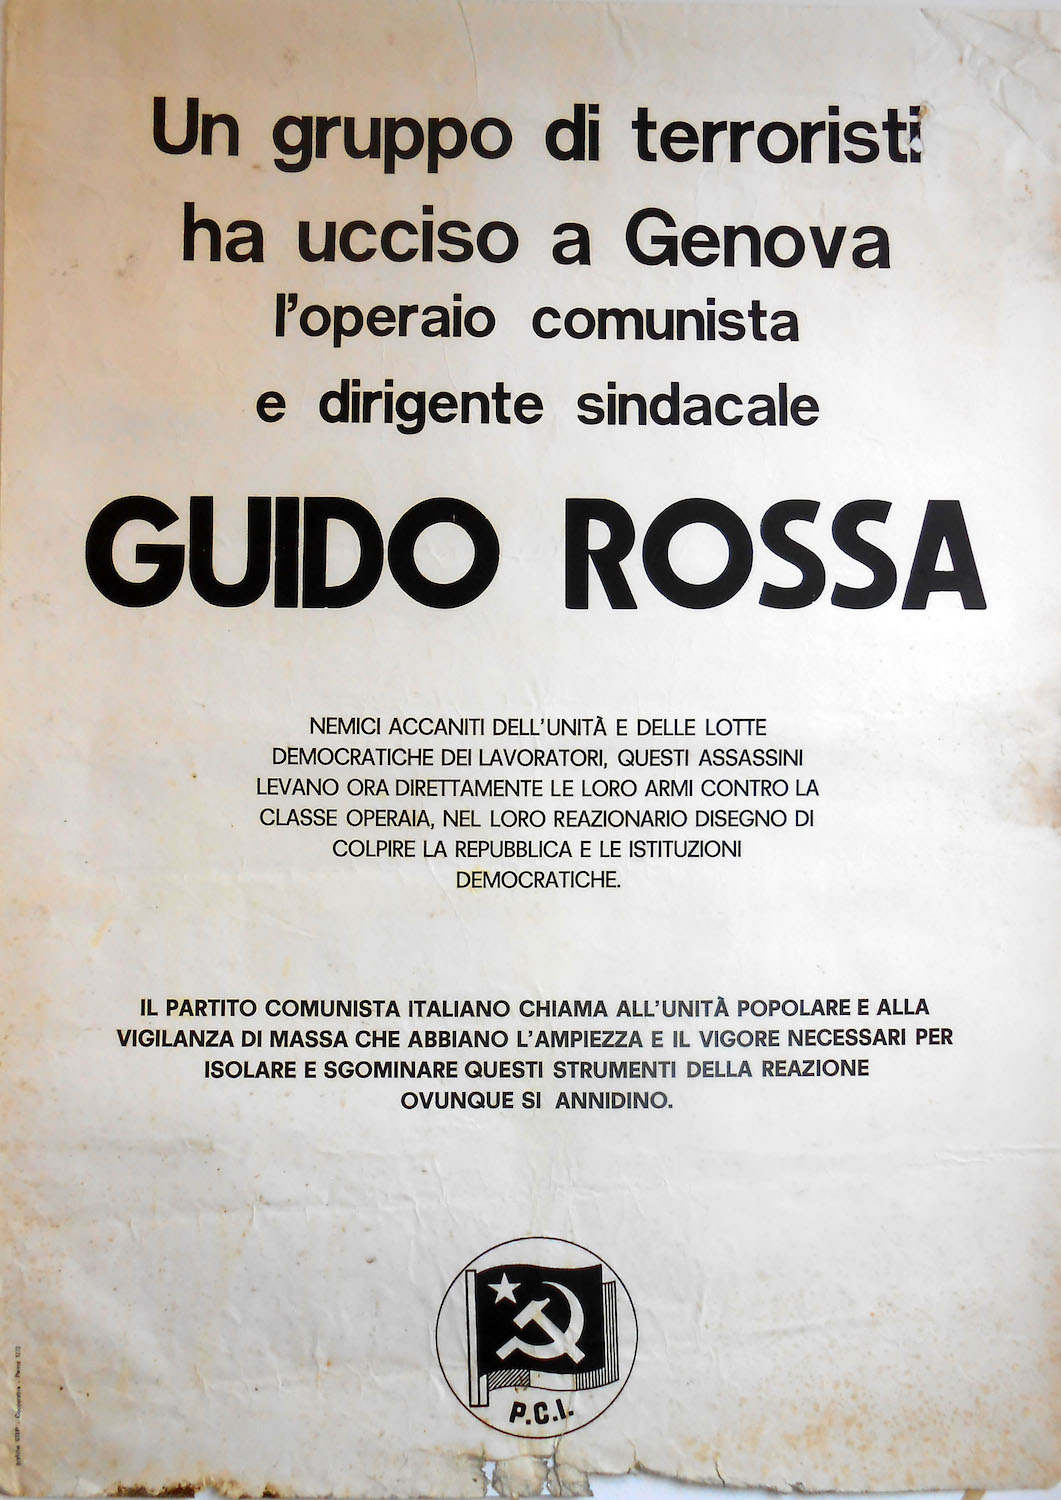 Centro Studi per la stagione dei movimenti (Parma), Fondo Giuffredi Massimo PCI-FGCI 17, Guido Rossa, manifesto, 1979, 635x885.